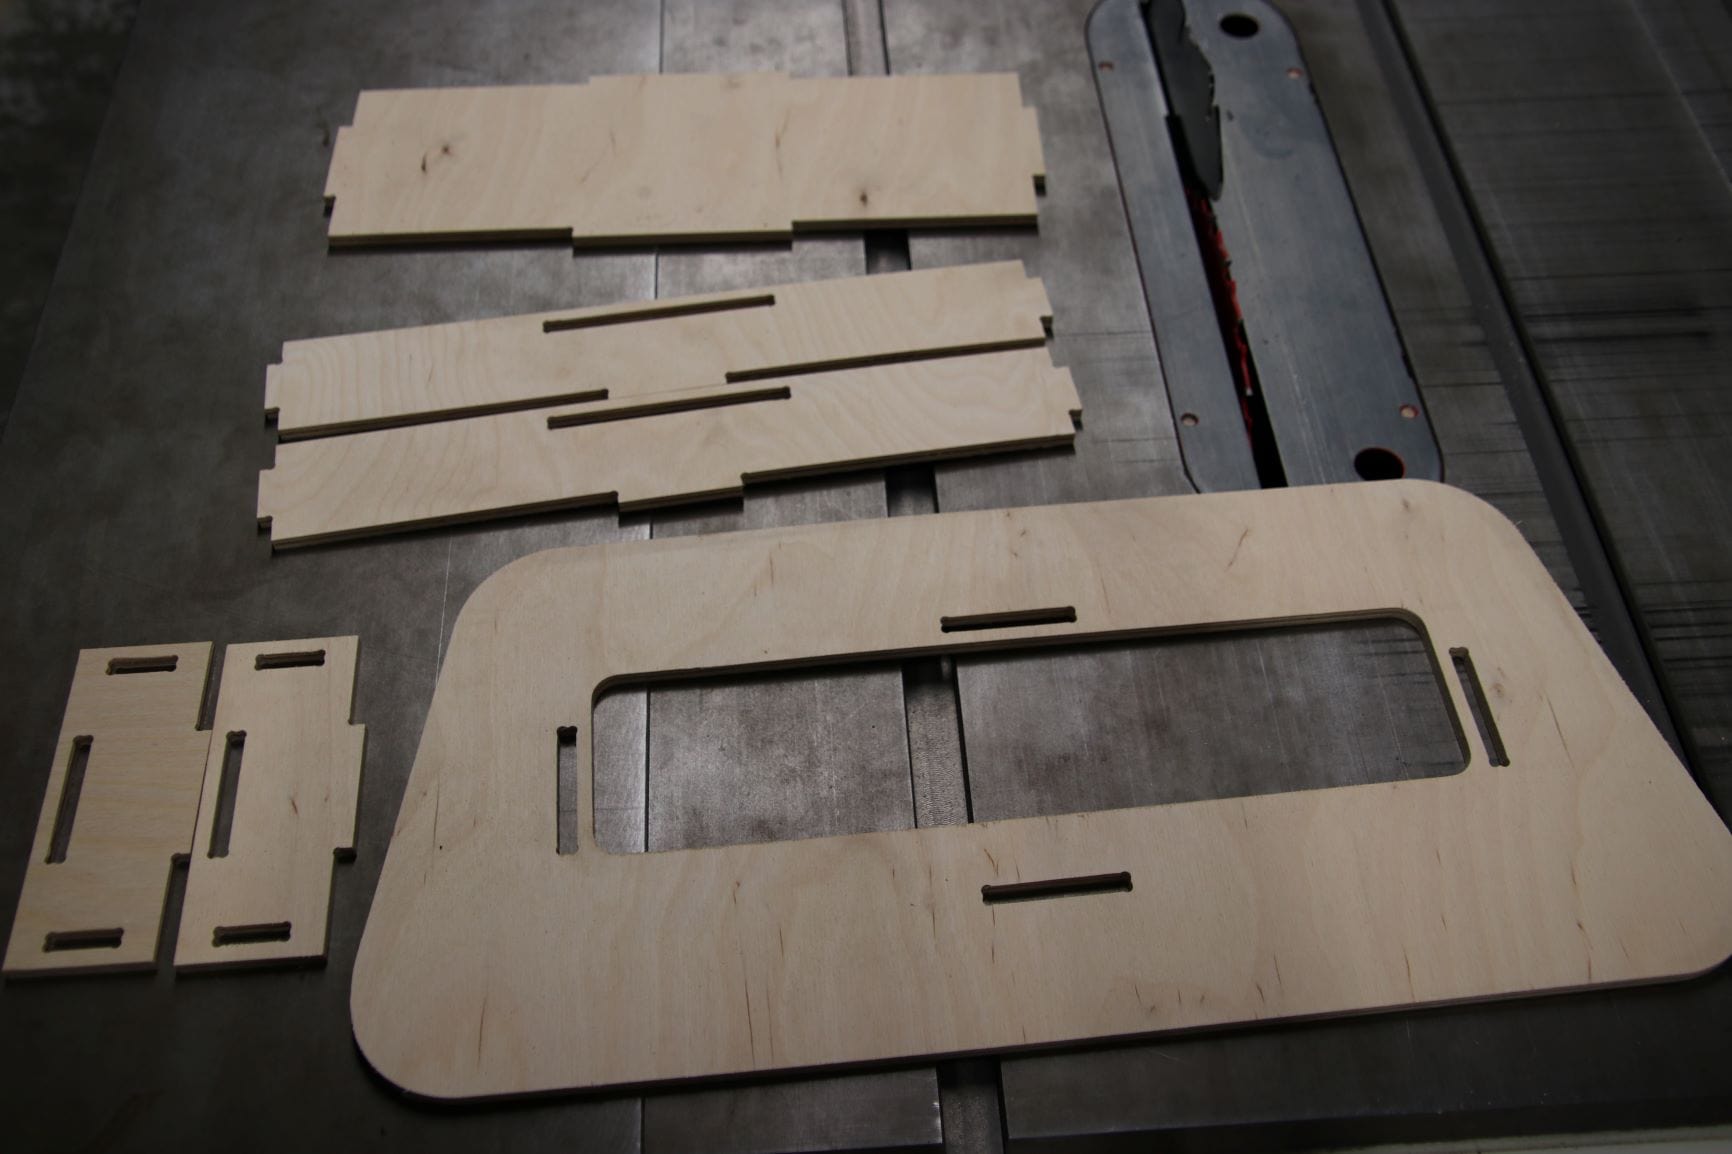 Sprinter Conversion Van Rear Door Storage Parts Raw Plywood Unassembled - The Vansmith in Boulder, Colorado